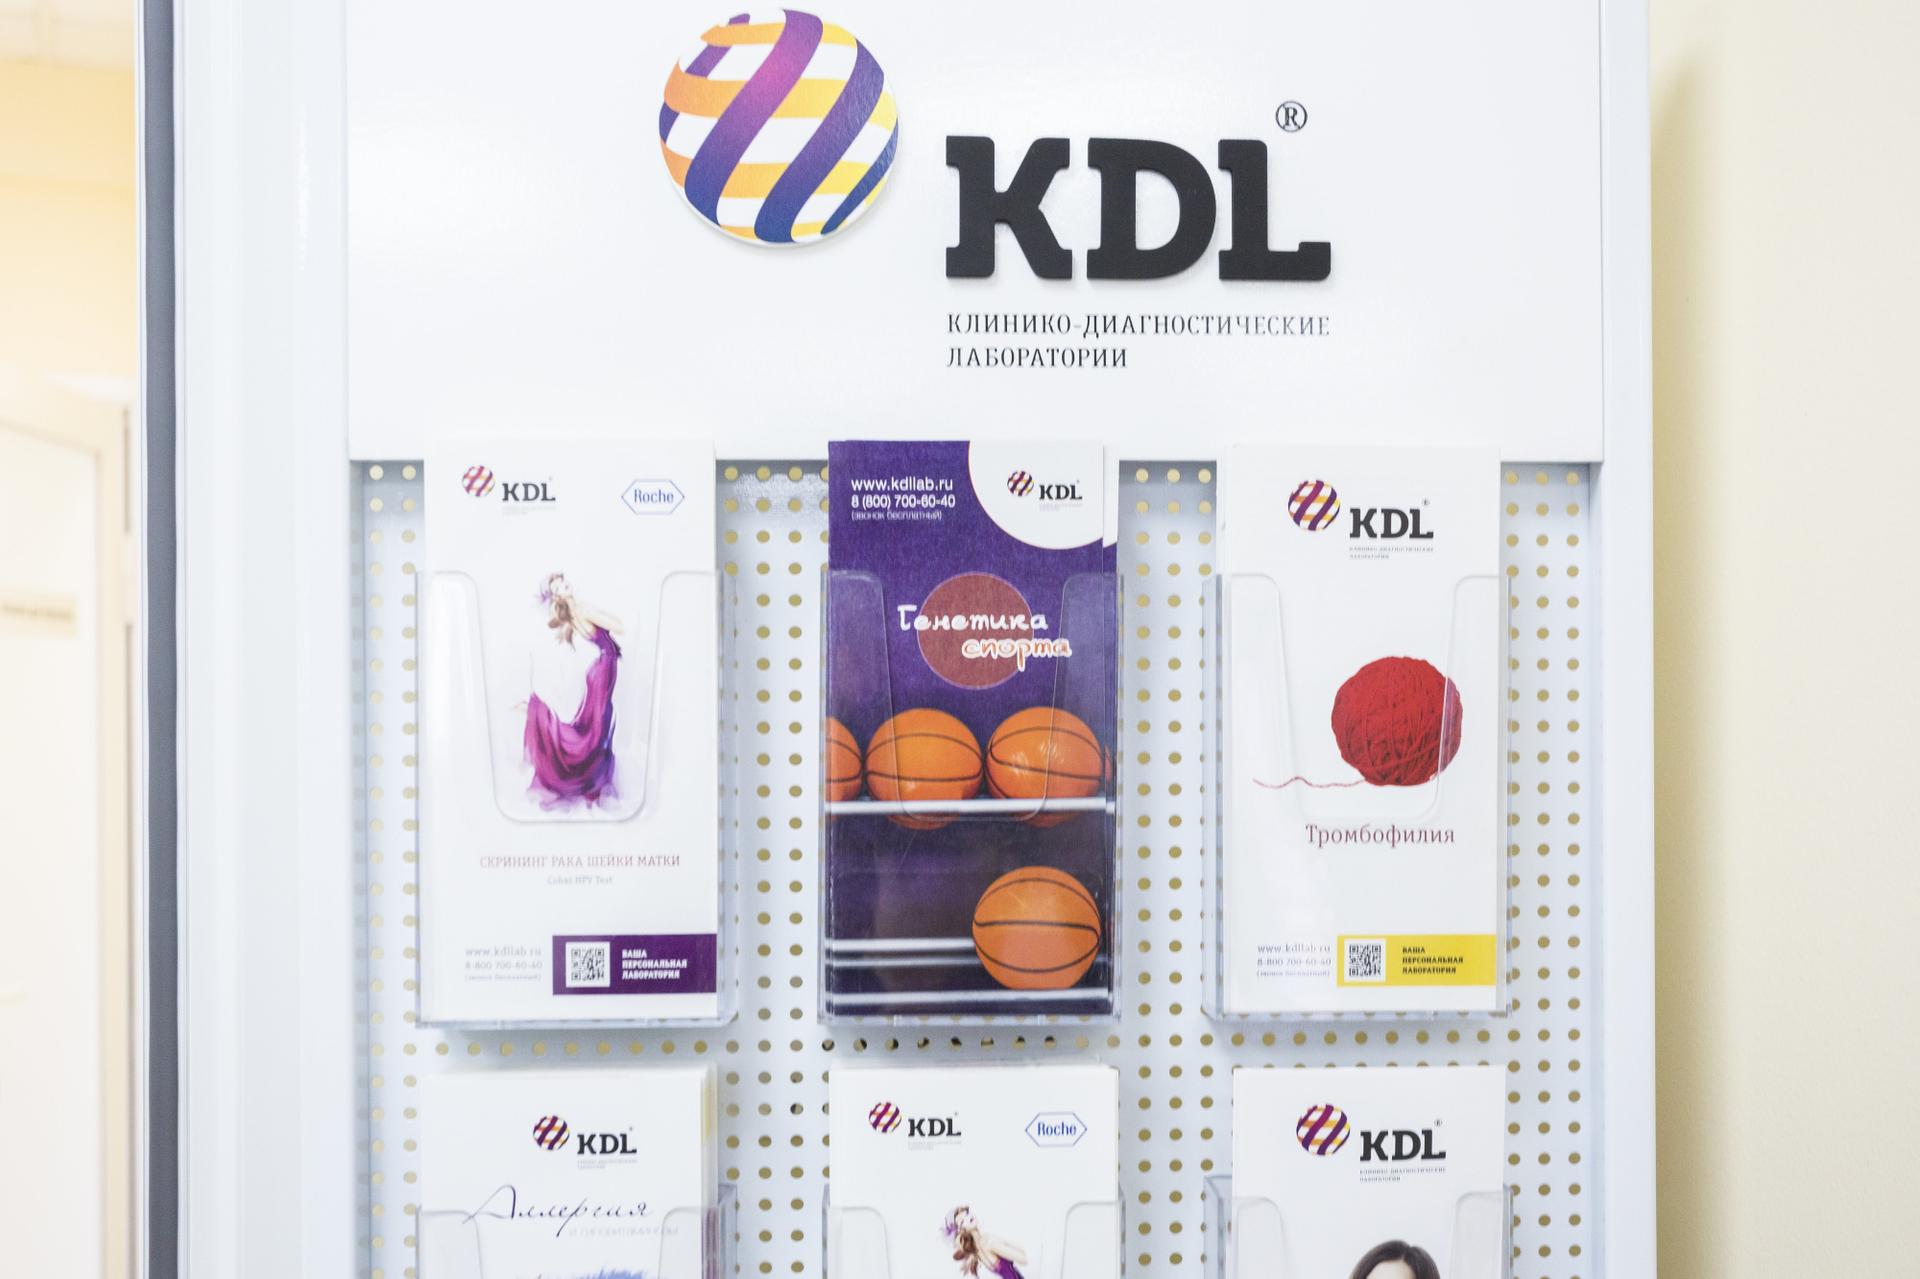 Кдл ответы. КДЛ лаборатория. Логотип КДЛ лаборатория. КДЛ картинки. Рекламные материалы KDL.